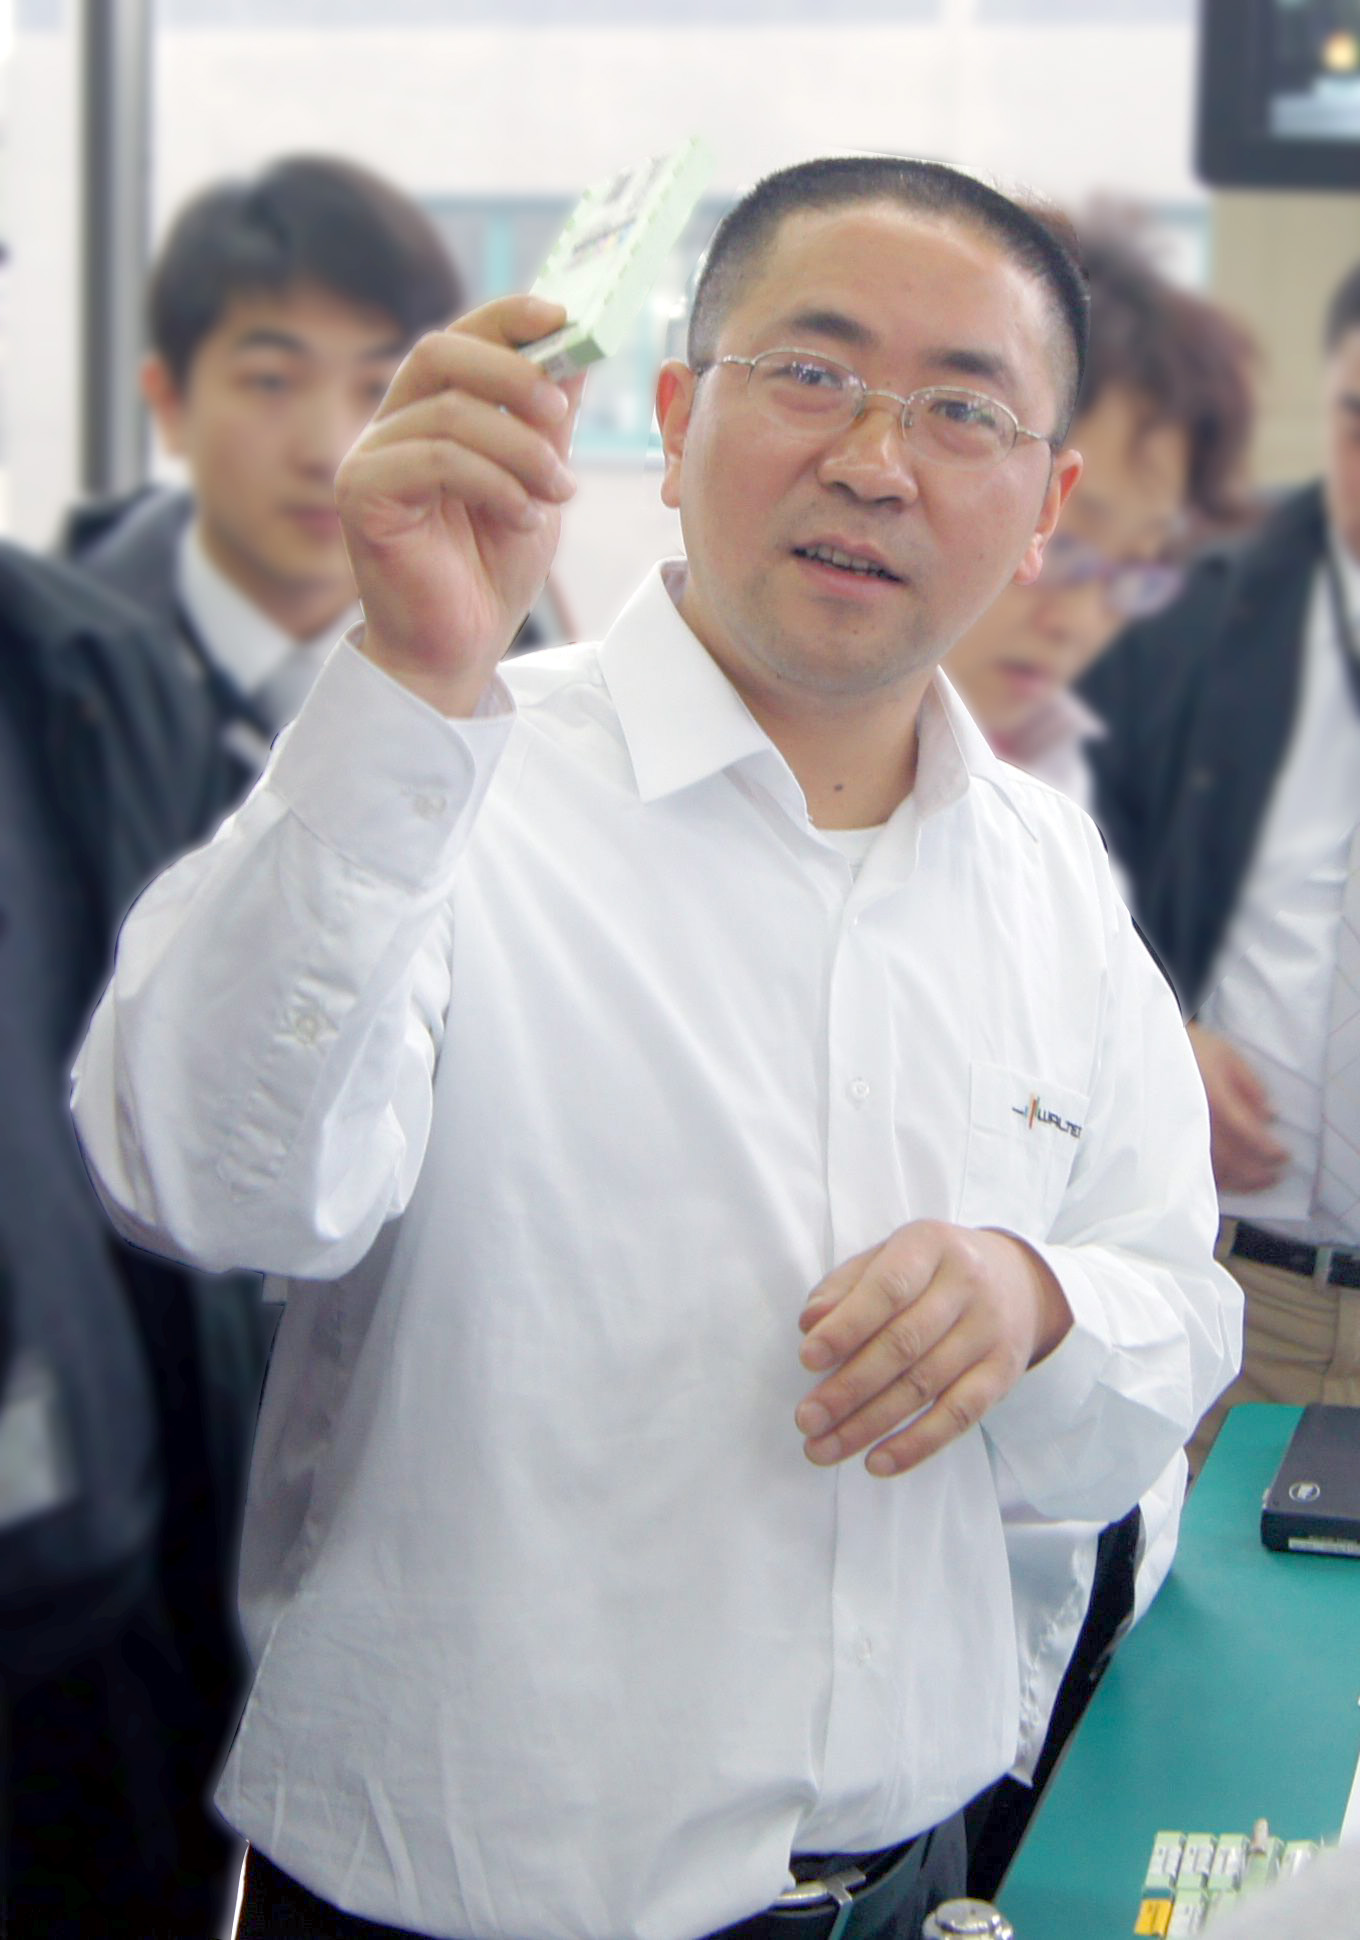 Mr. Wang Zhihong